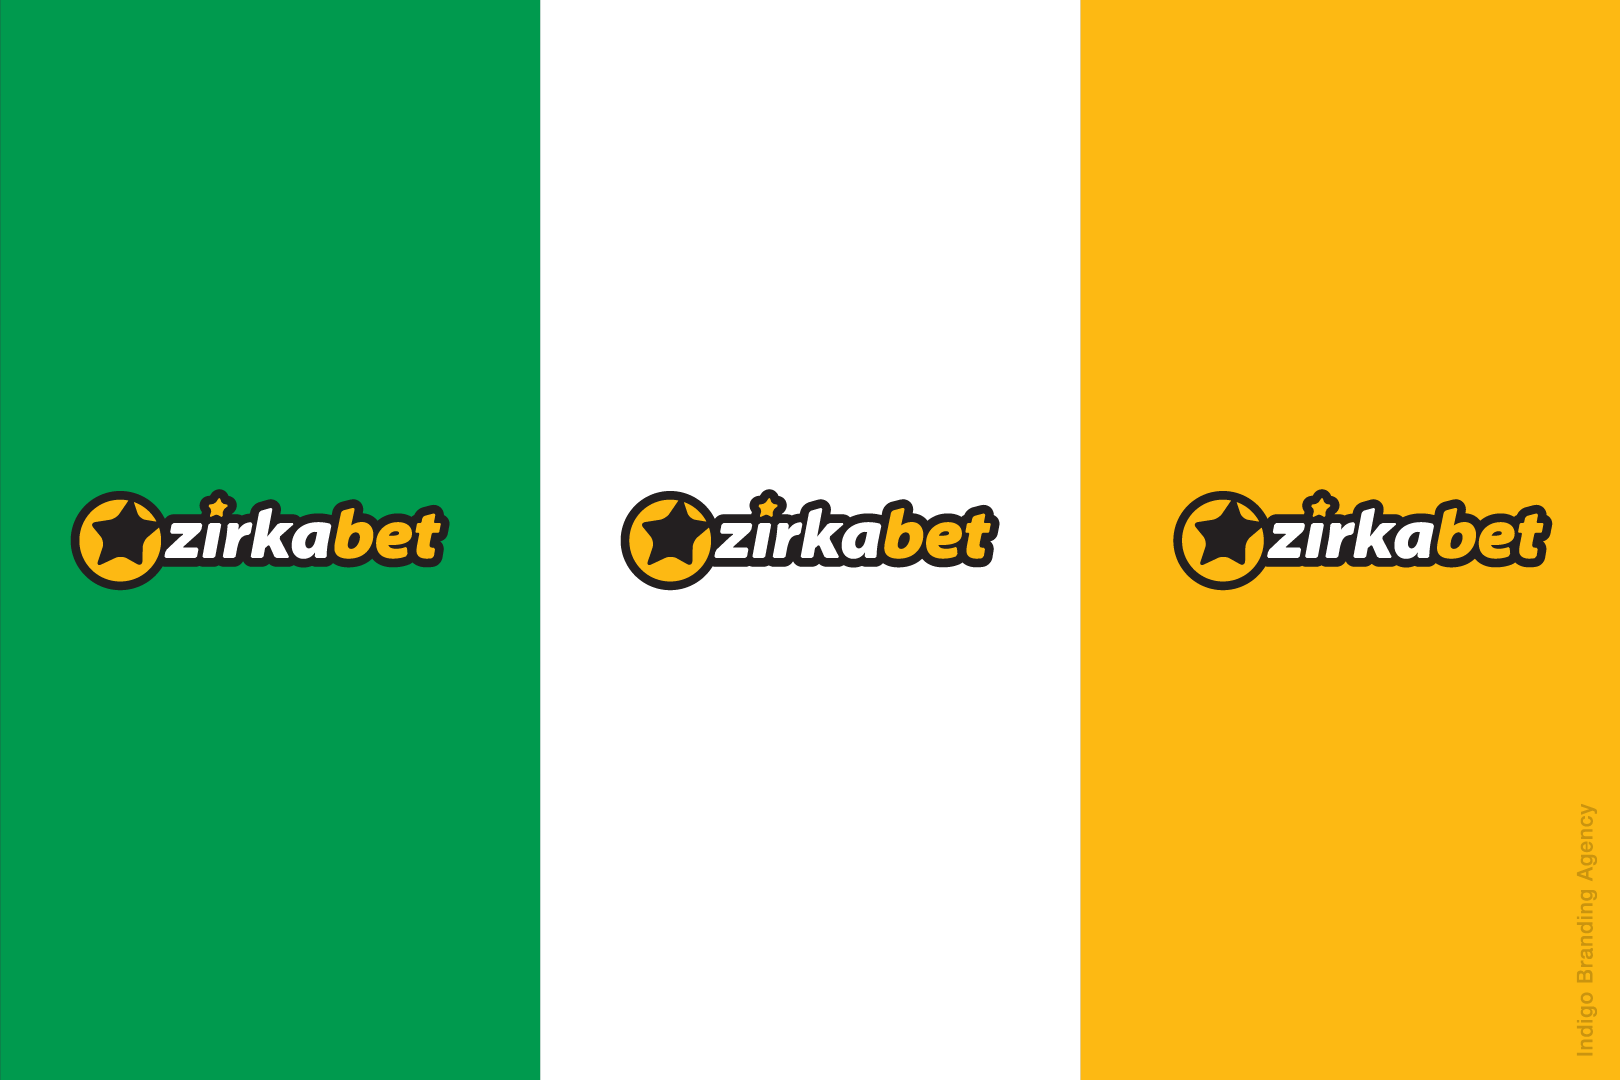 Zirkabet branding and logo design by Indigo branding